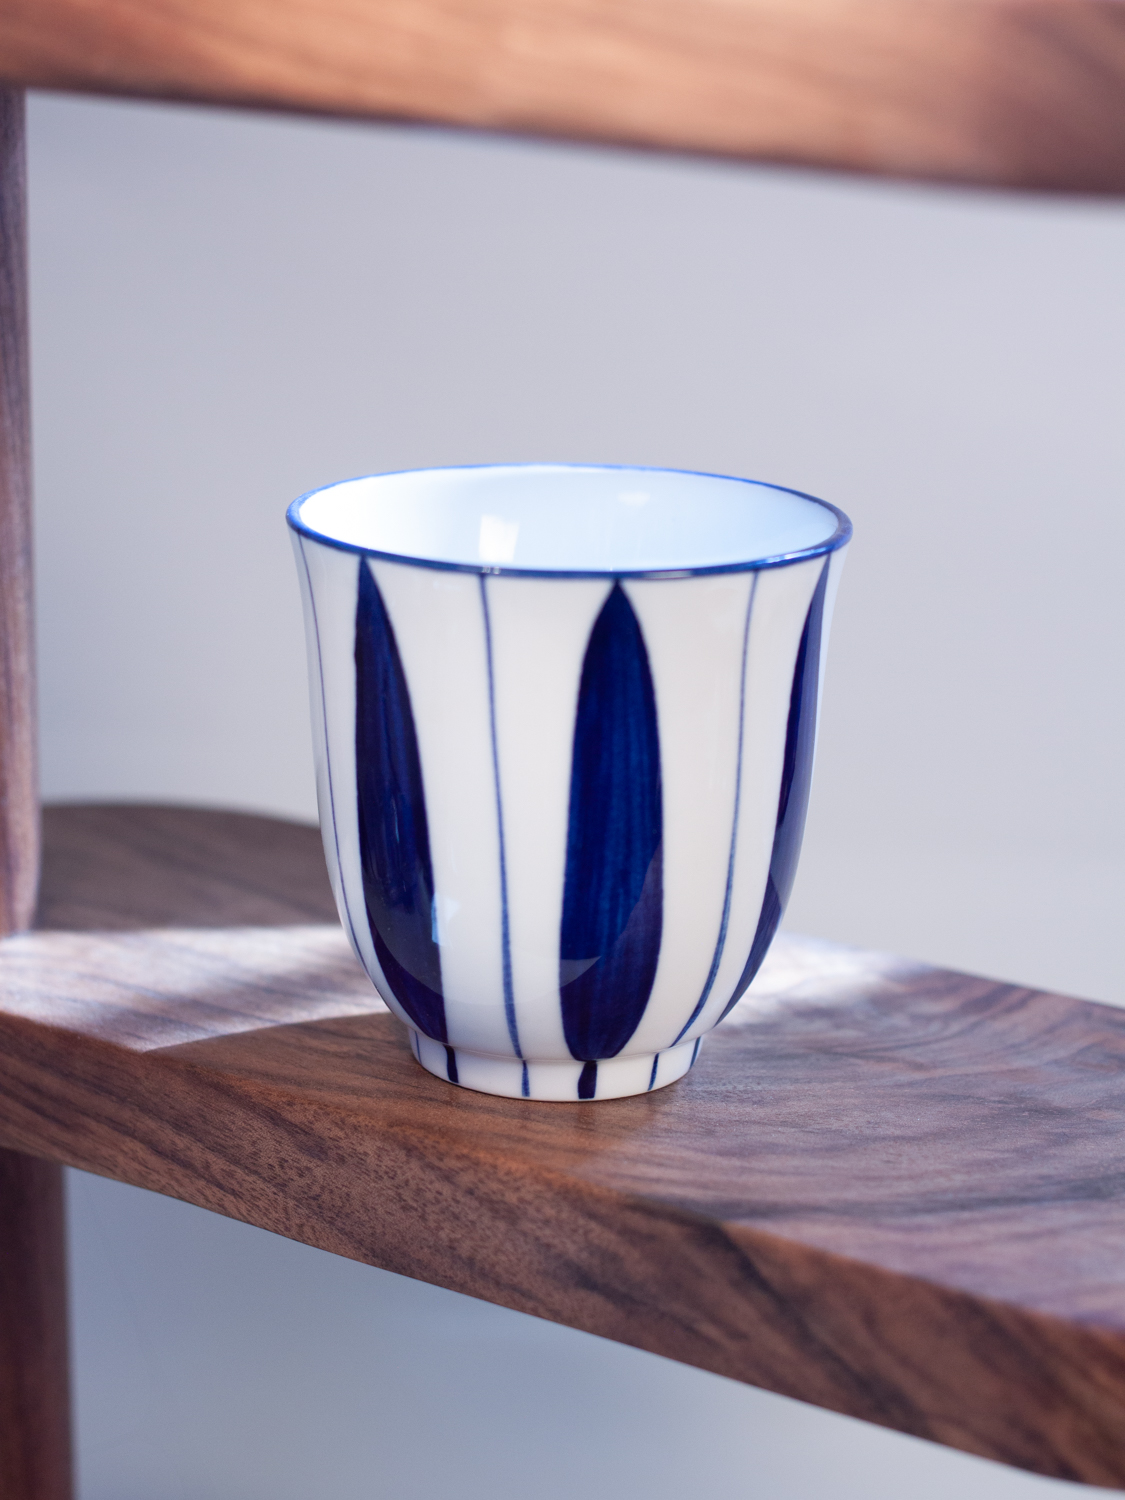 日式和風風格陶瓷咖啡杯復古手握杯可選購1個或2個